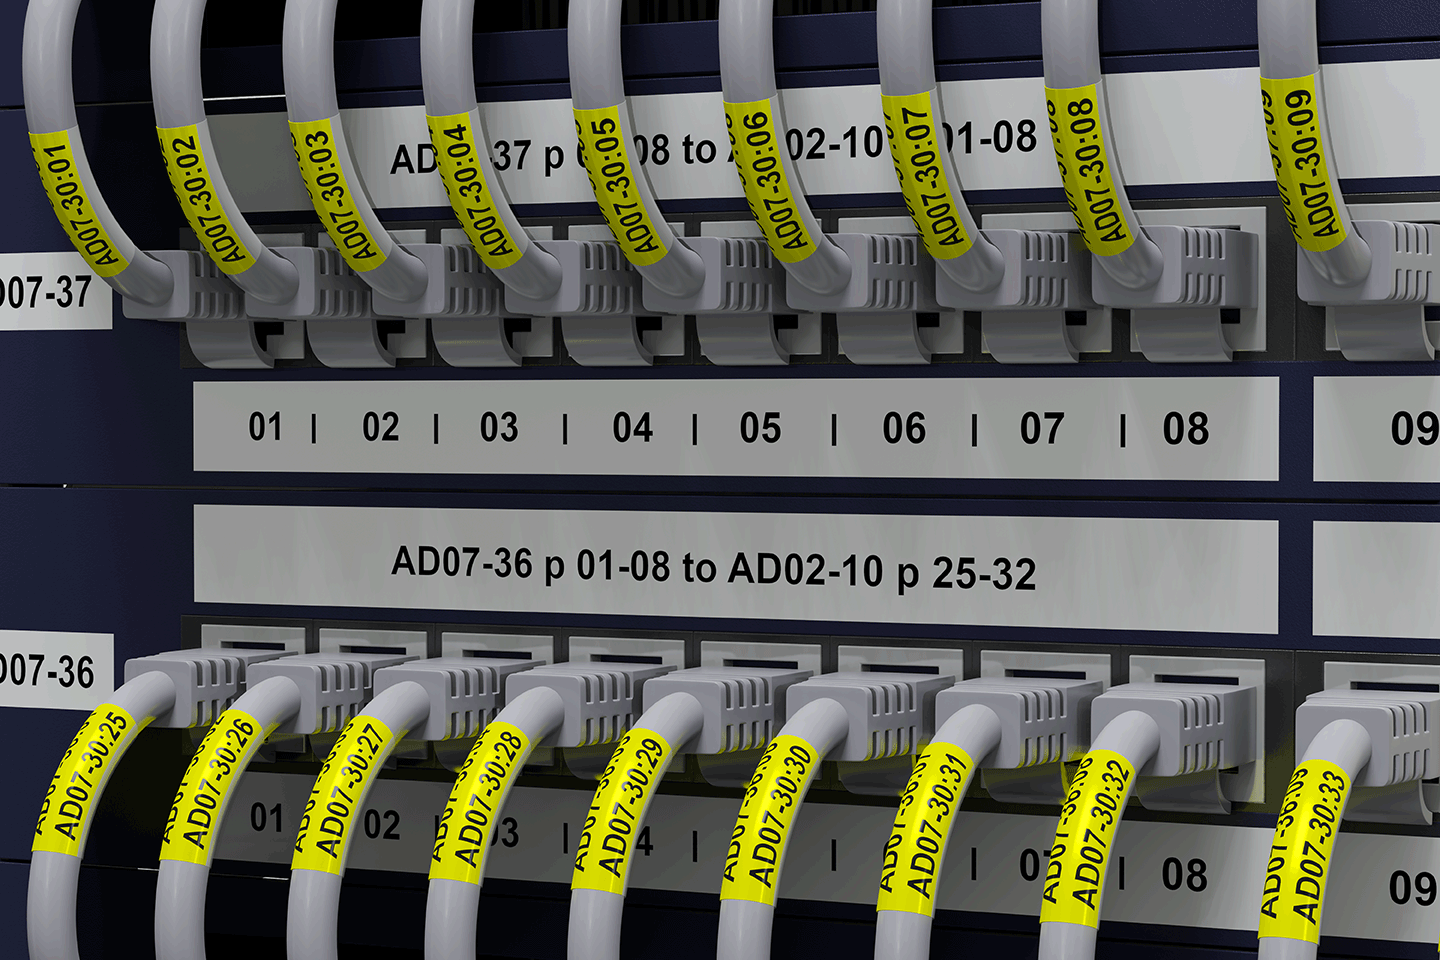 PT-E550WNIVP - network infrastructure label printer kit 3